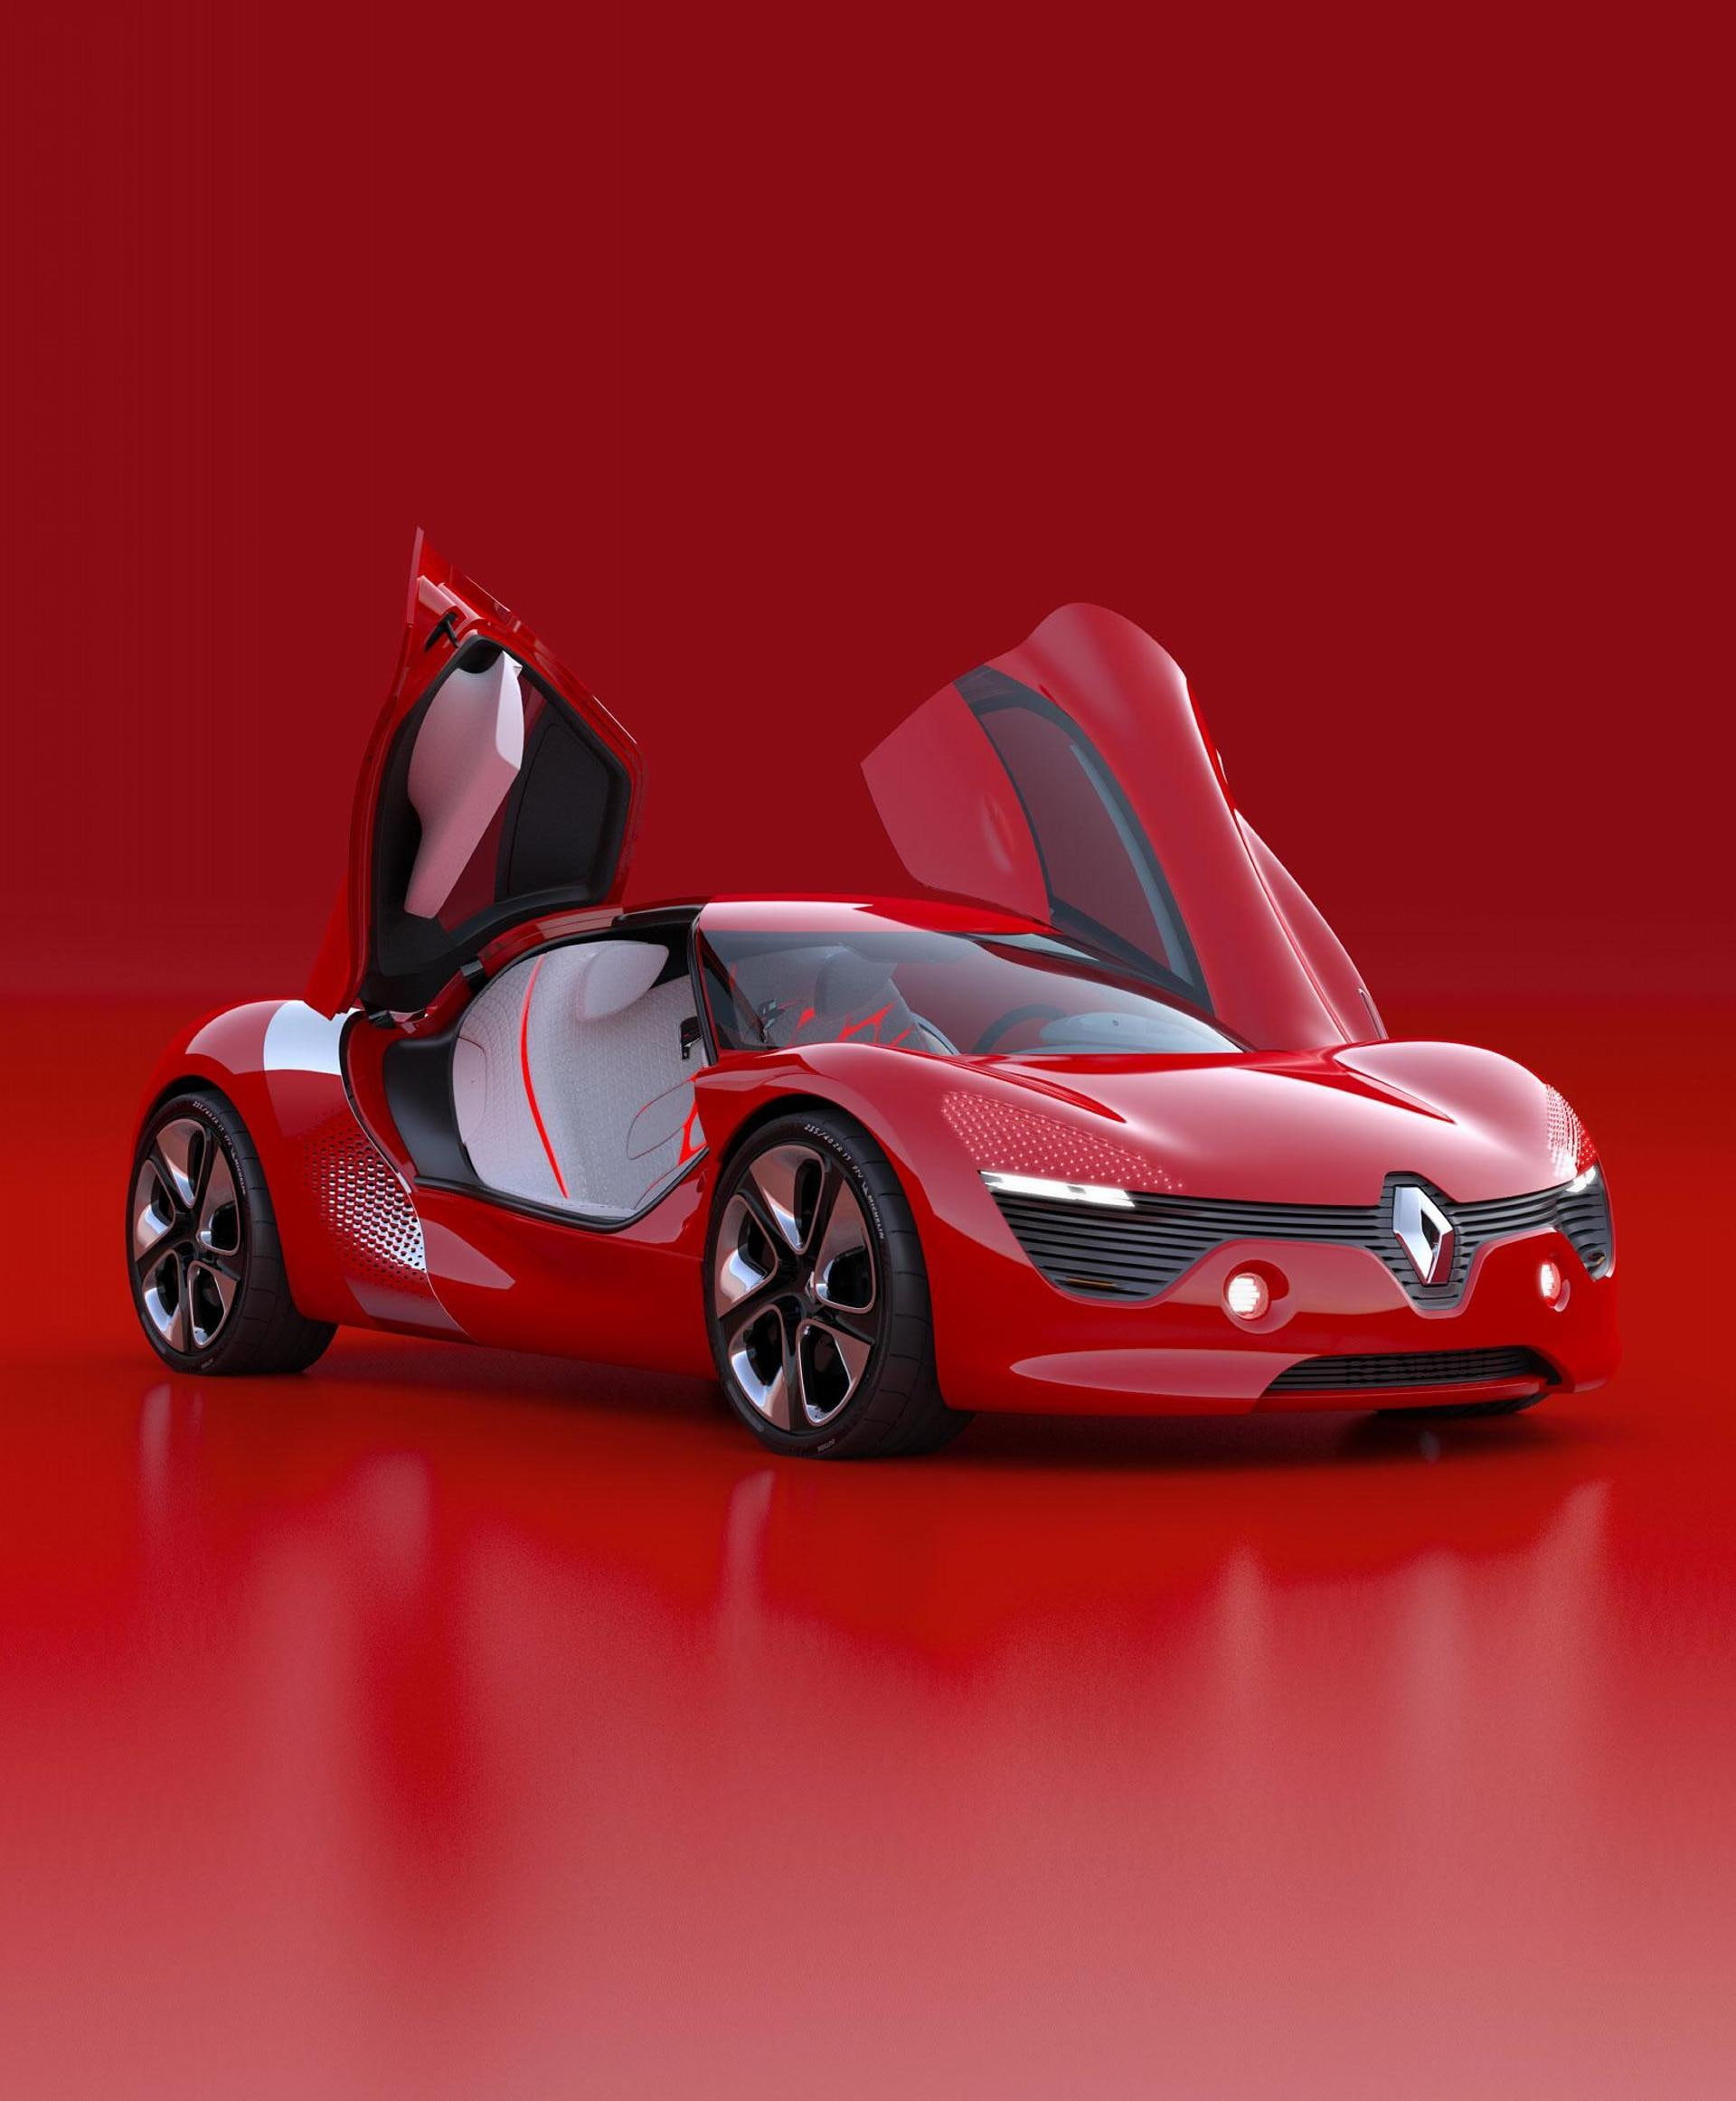 2010 renault dezir concept, car, red, mode of transportation